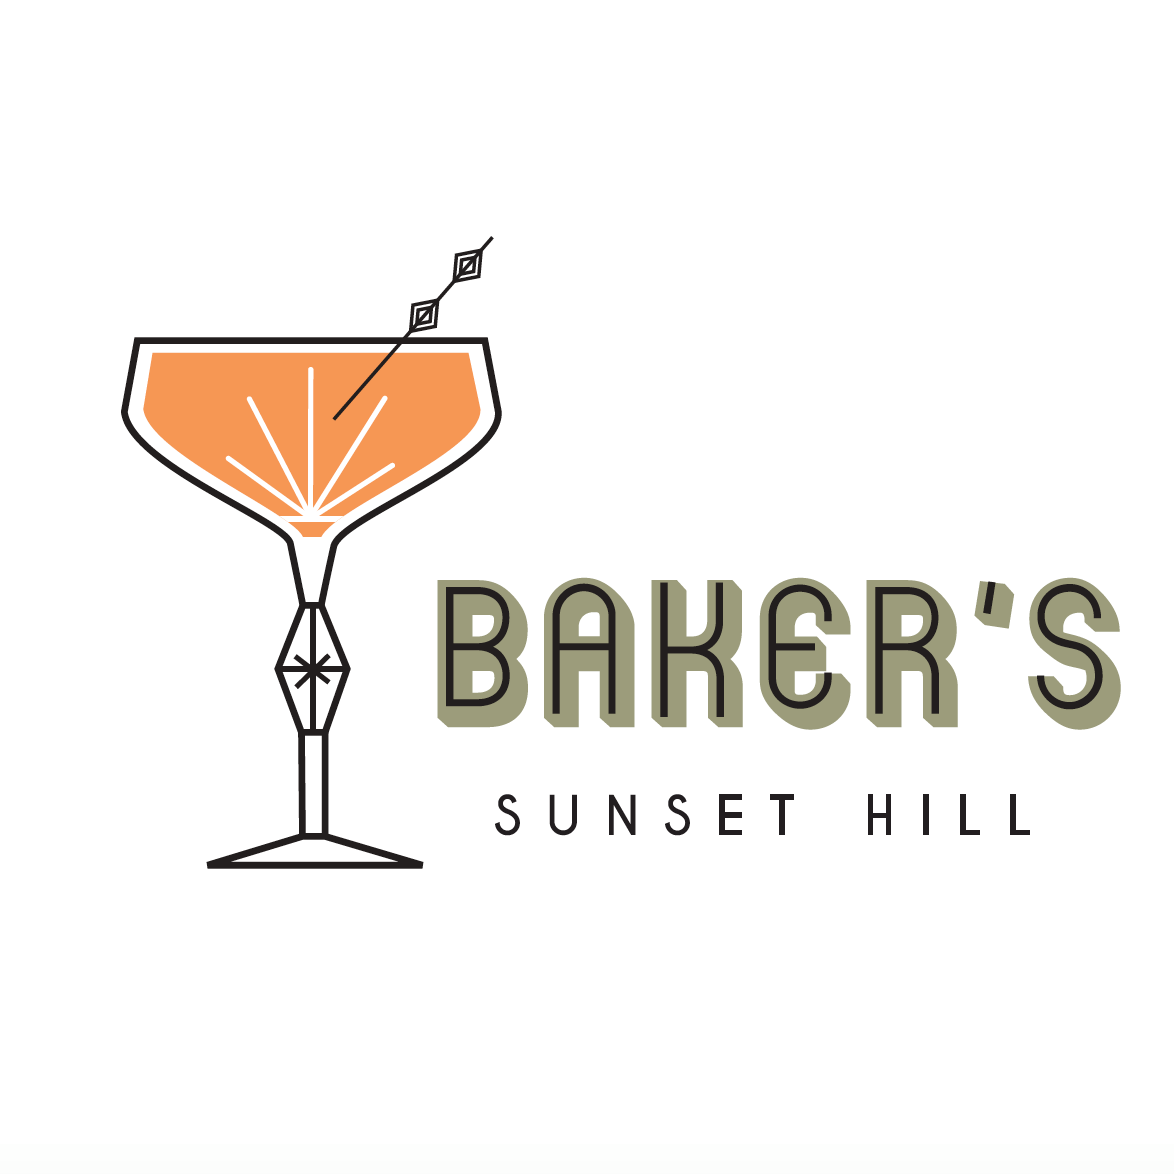 Company logo of Baker's